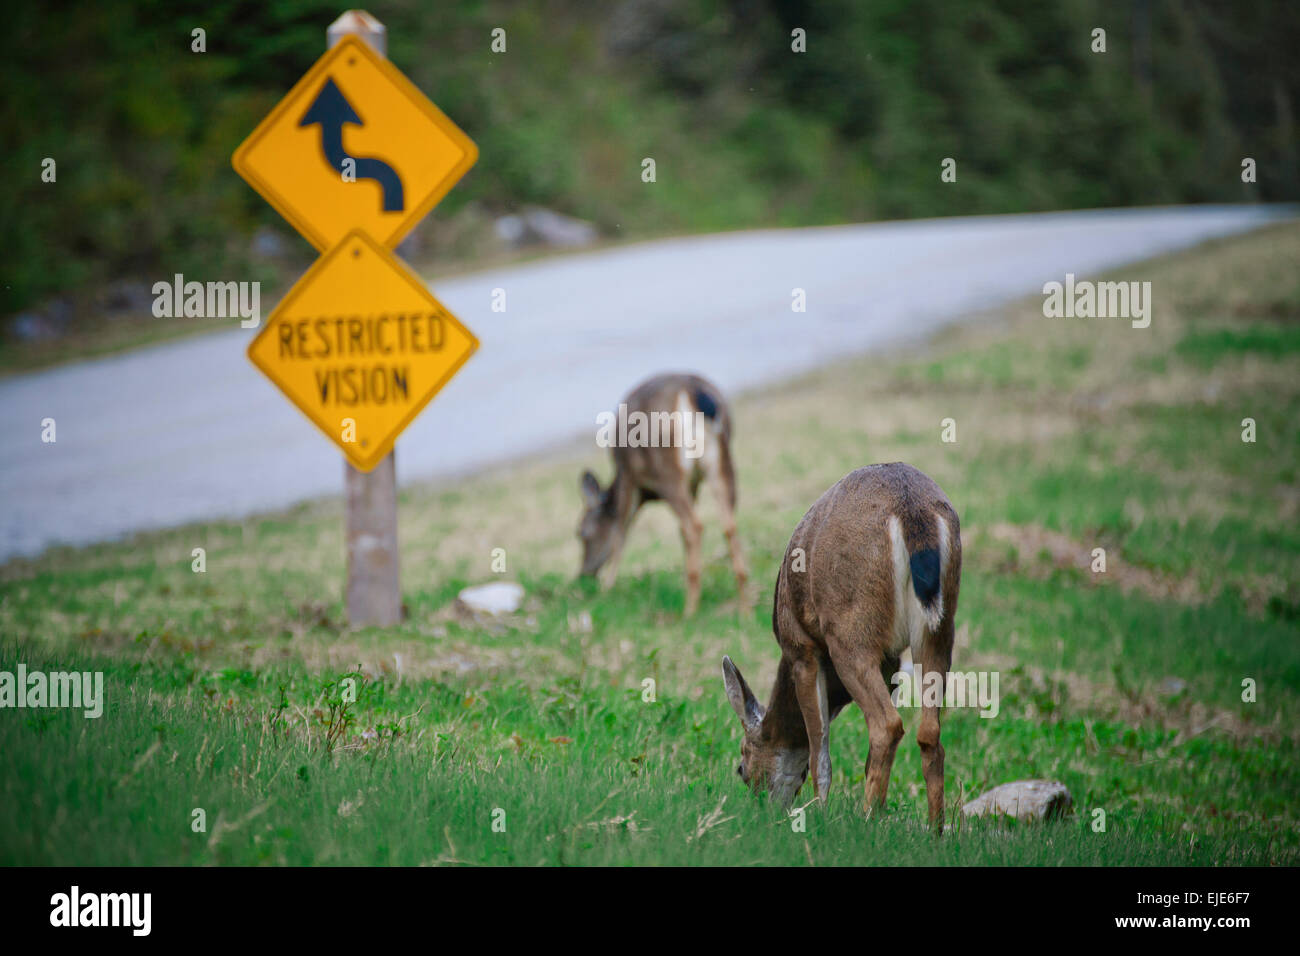 Two deer graze by the roadside Stock Photo